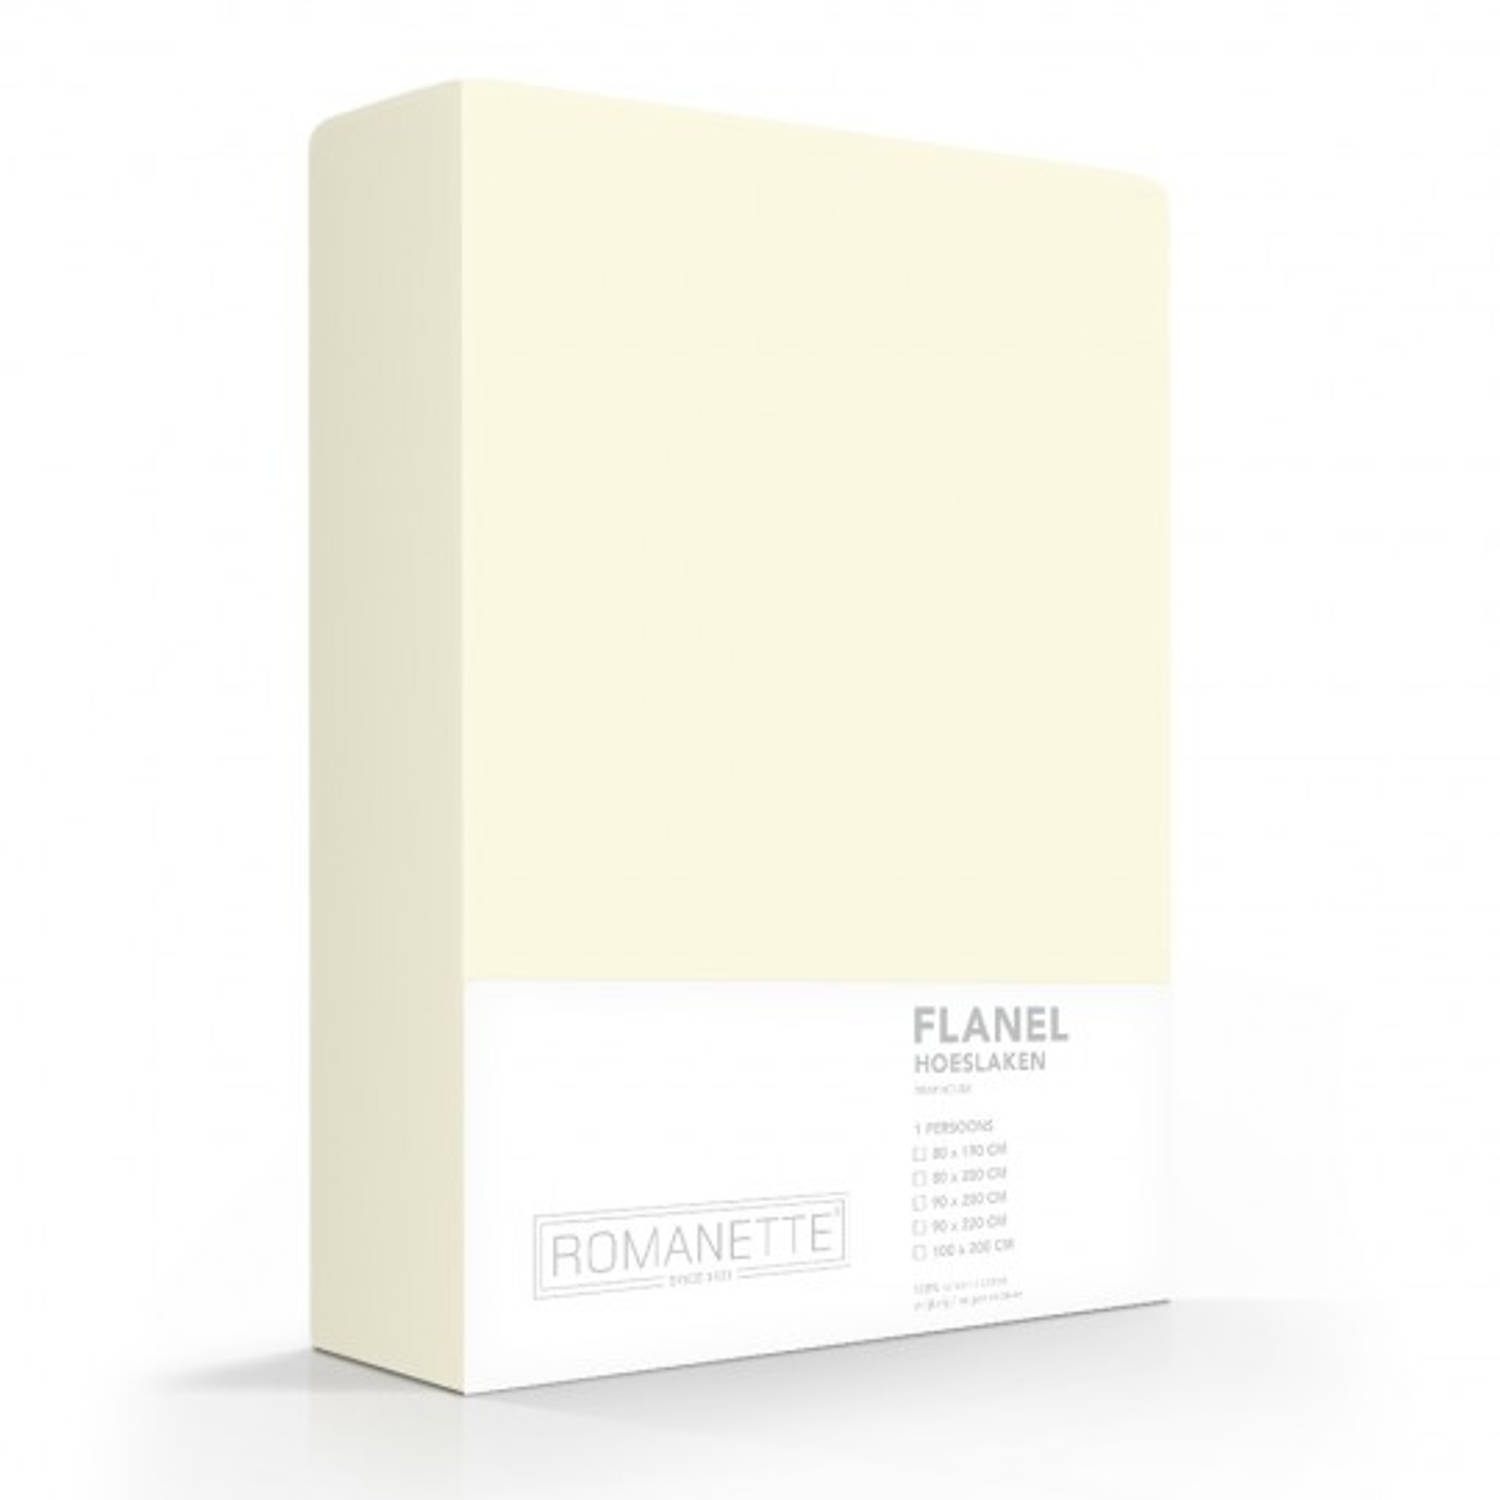 Flanellen Hoeslaken Ivoor Romanette-90 X 220 Cm